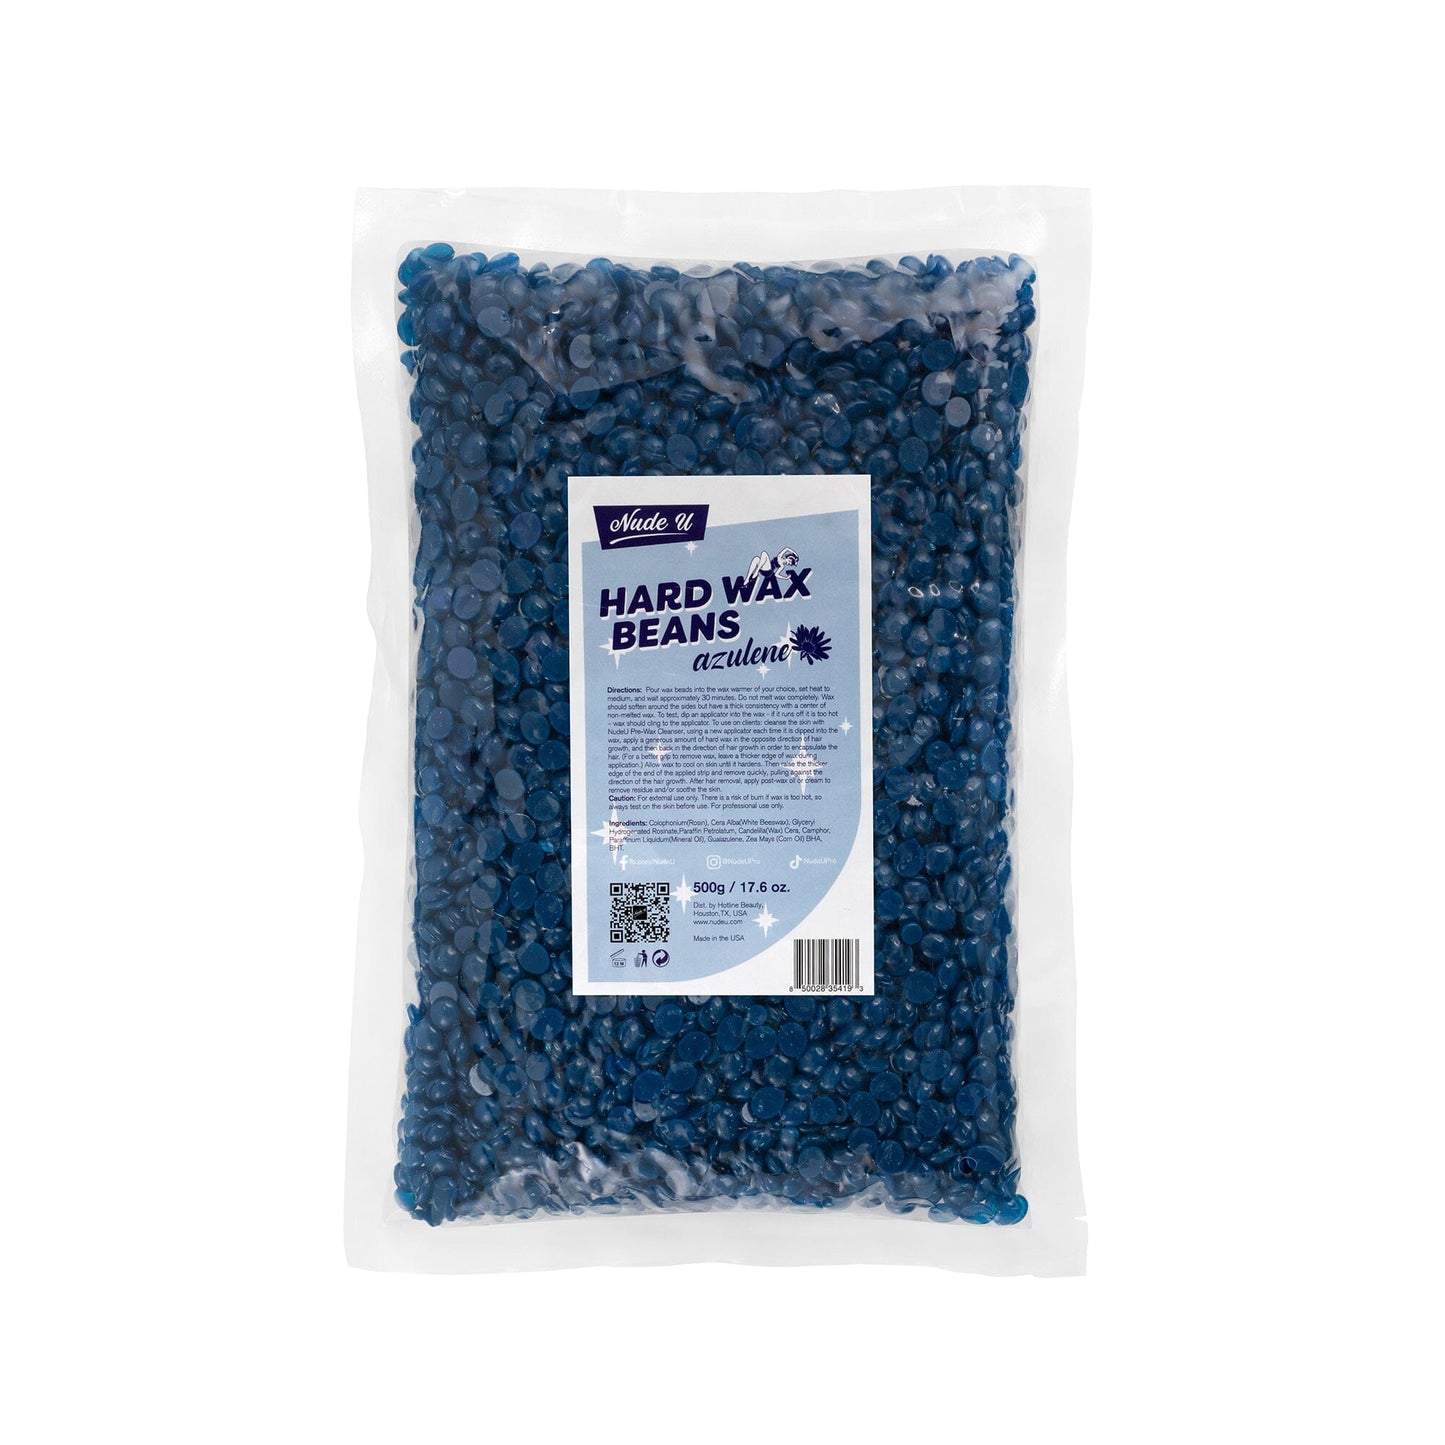 Hard Wax Beans | Azulene | NUDE U Waxing Kits & Supplies NUDE U 17.6oz / 500g 